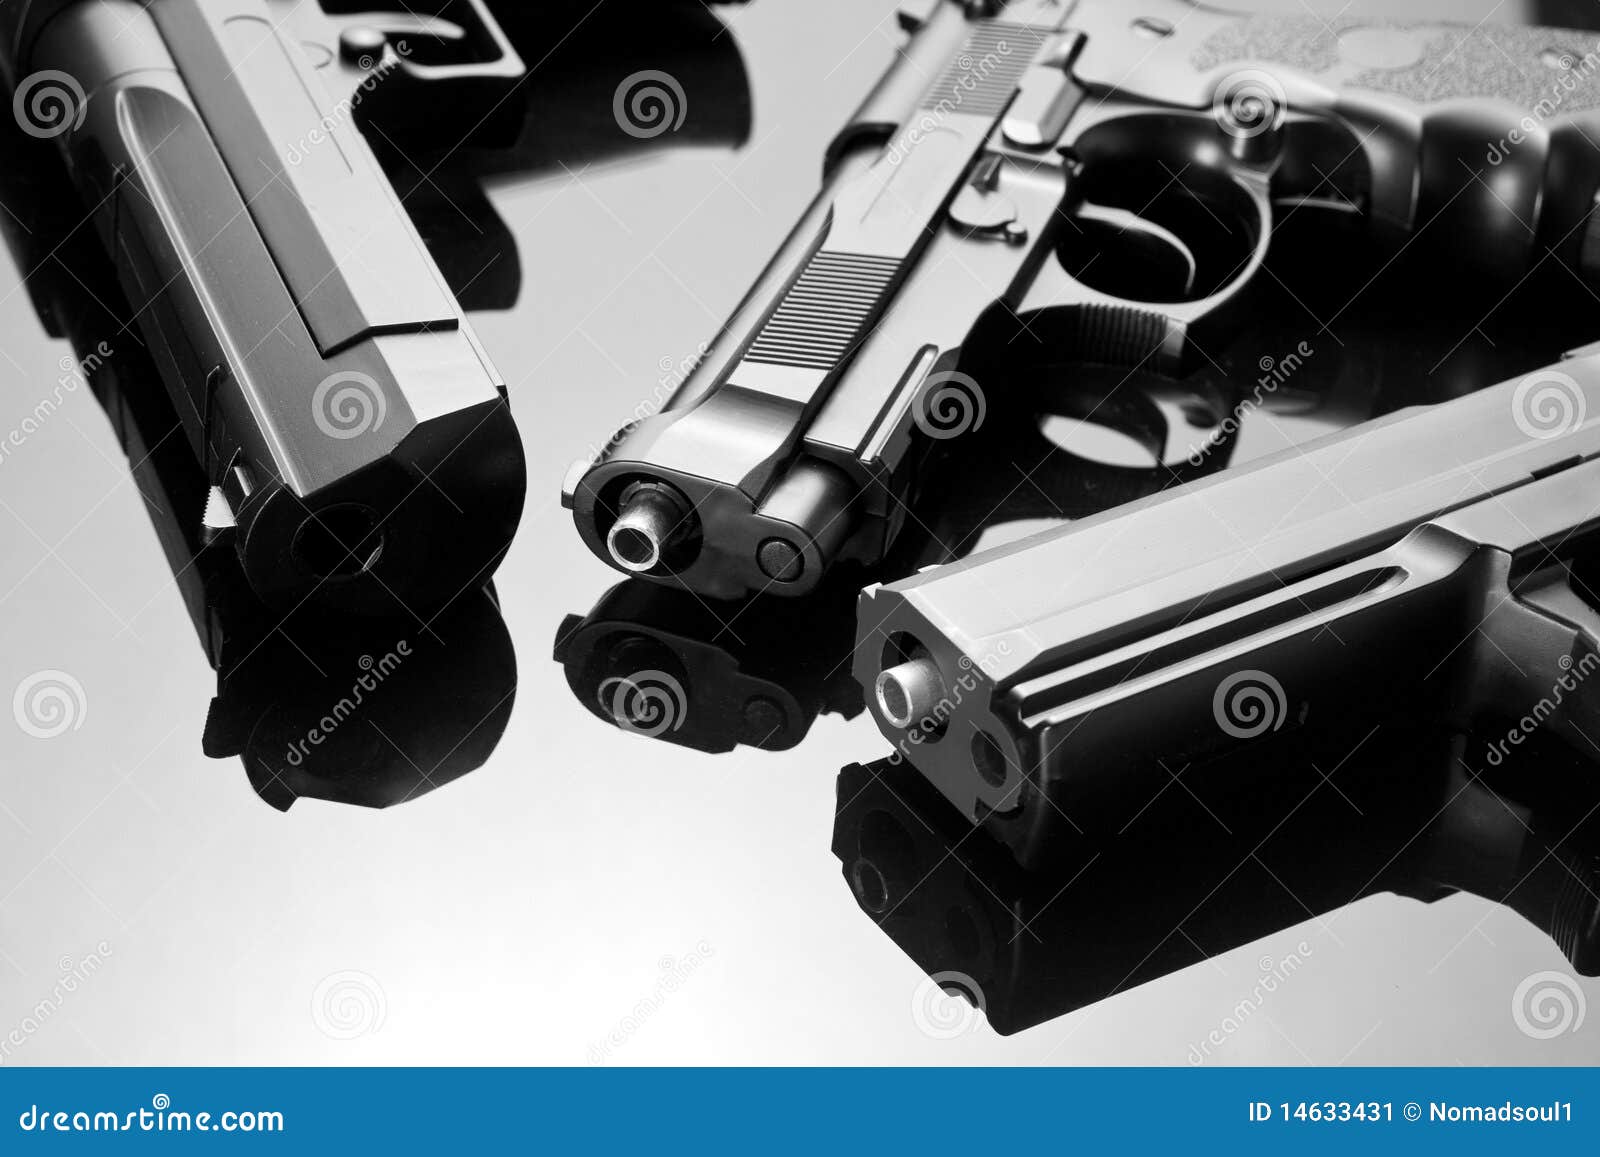 Tres armas de mano imagen de archivo. Imagen de asesinato - 14633431